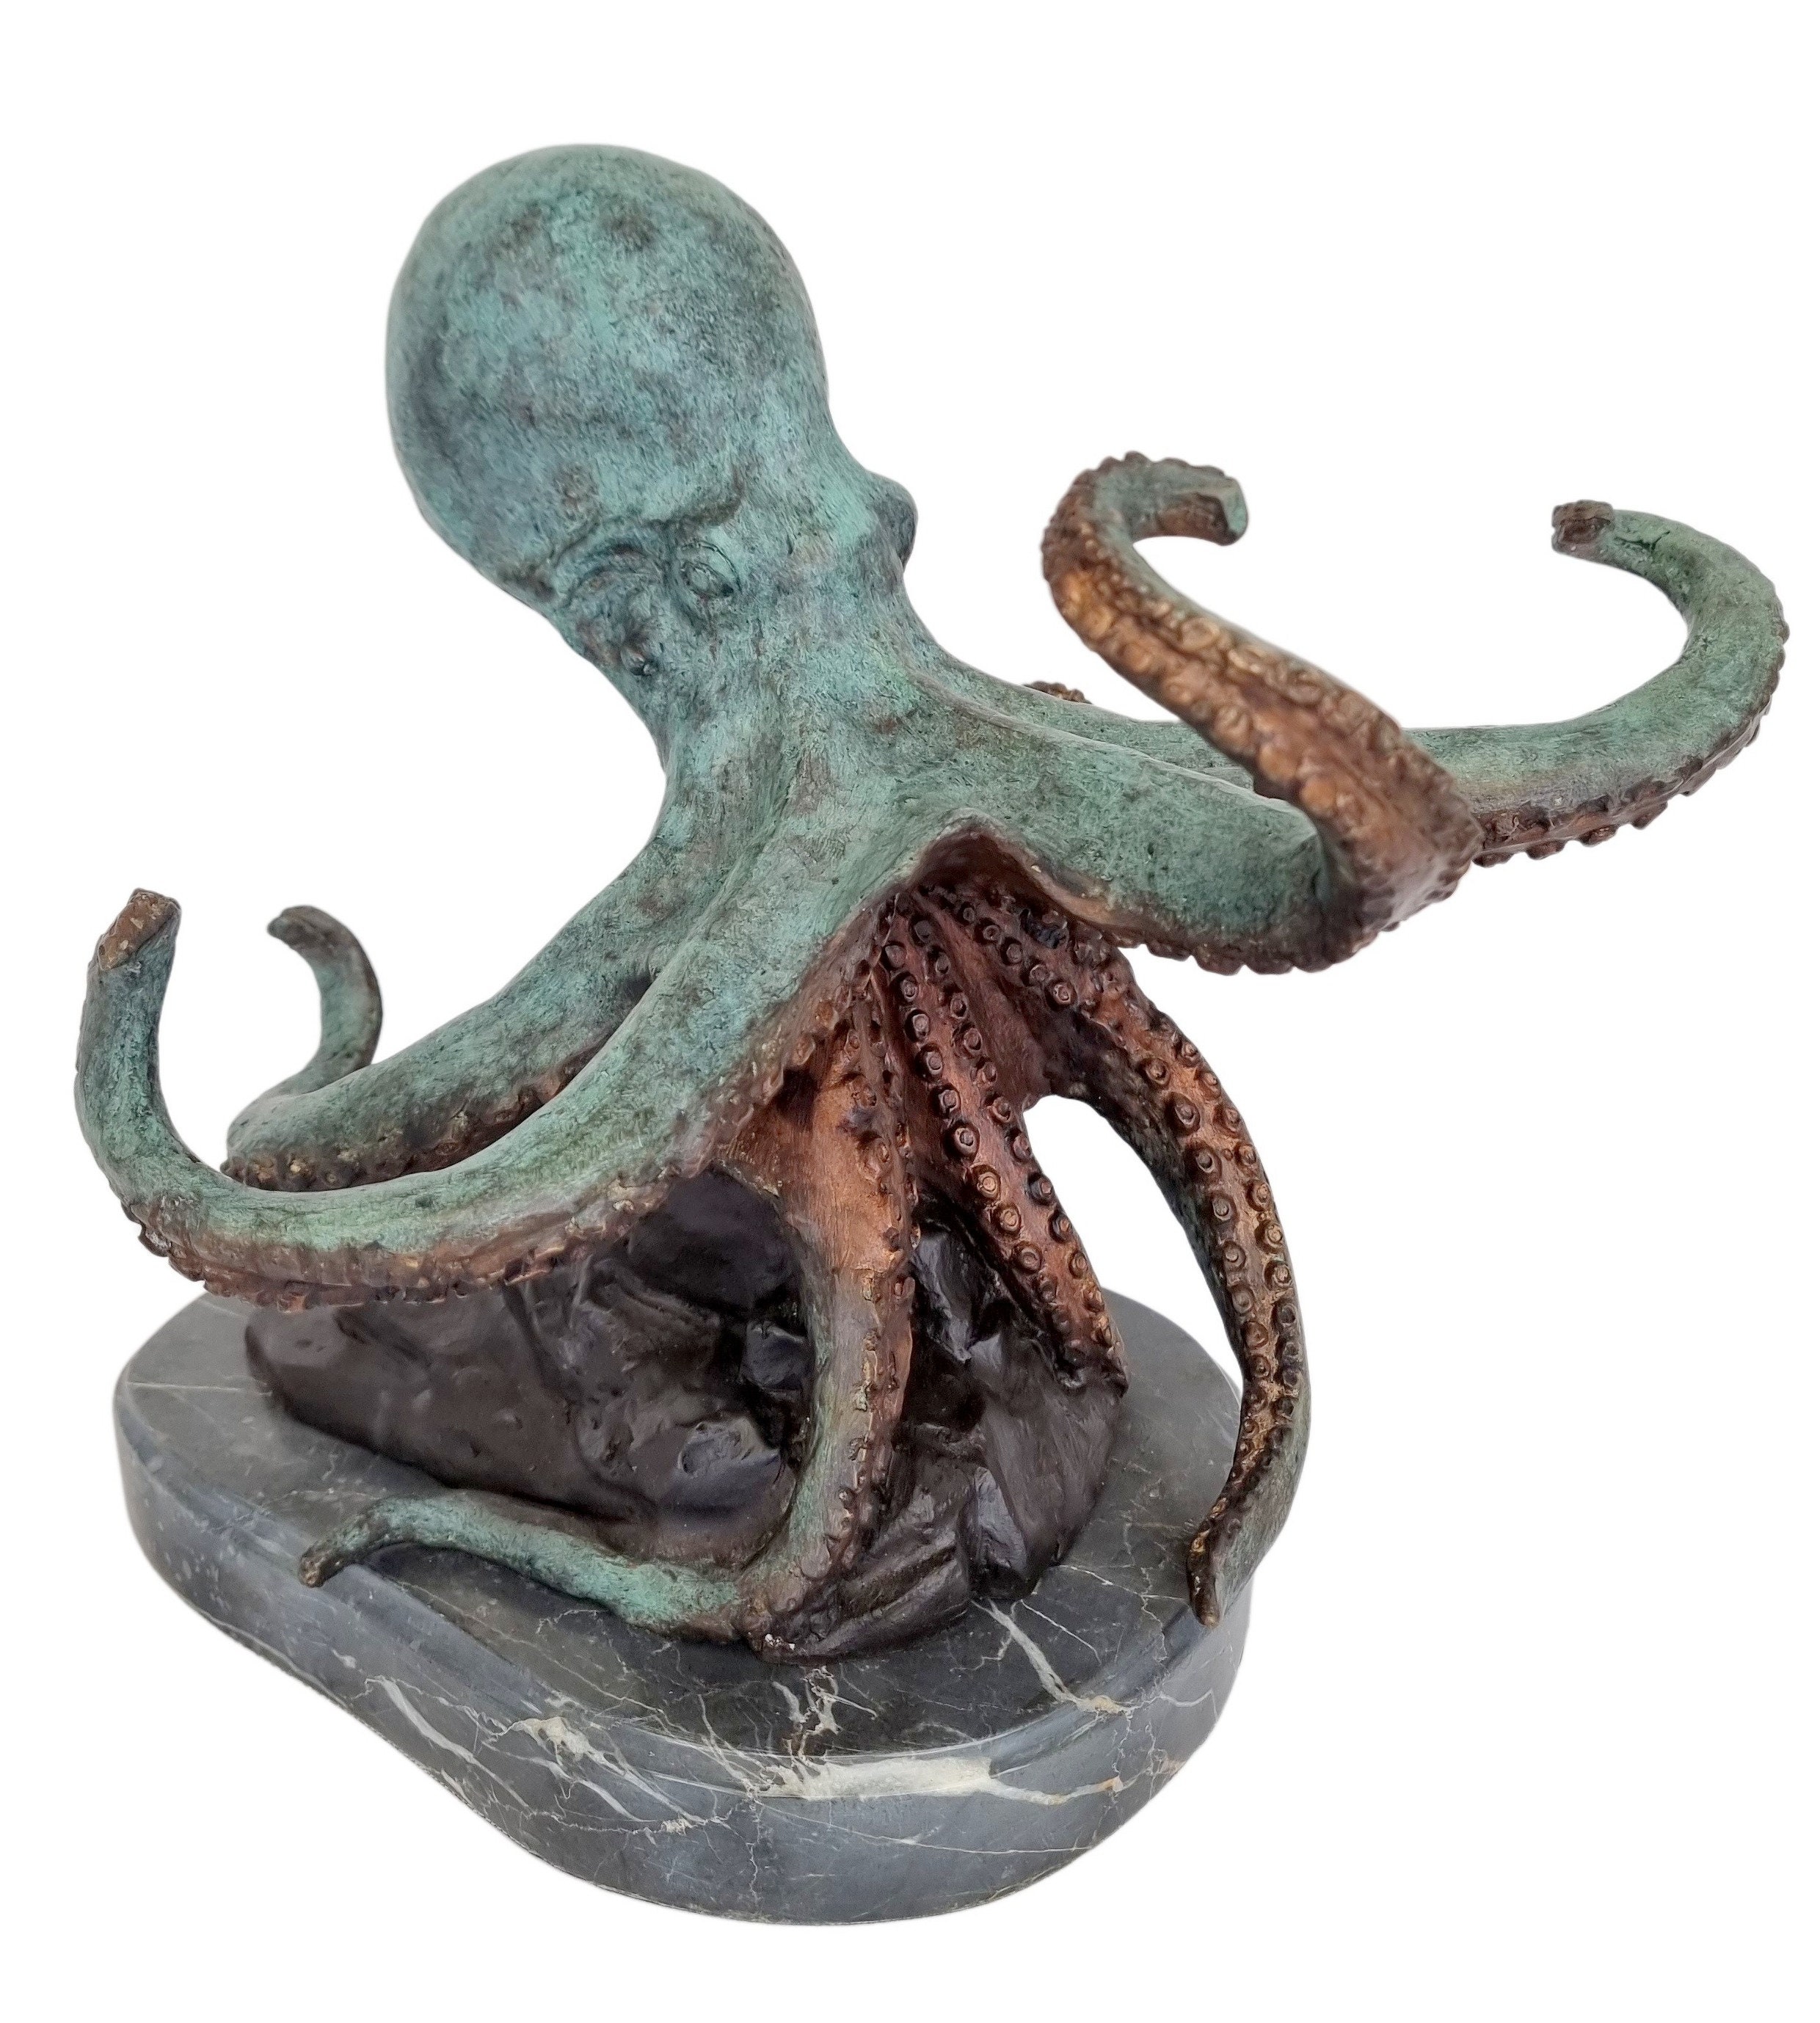 Buy Aquarium Octopus Online In India Etsy India